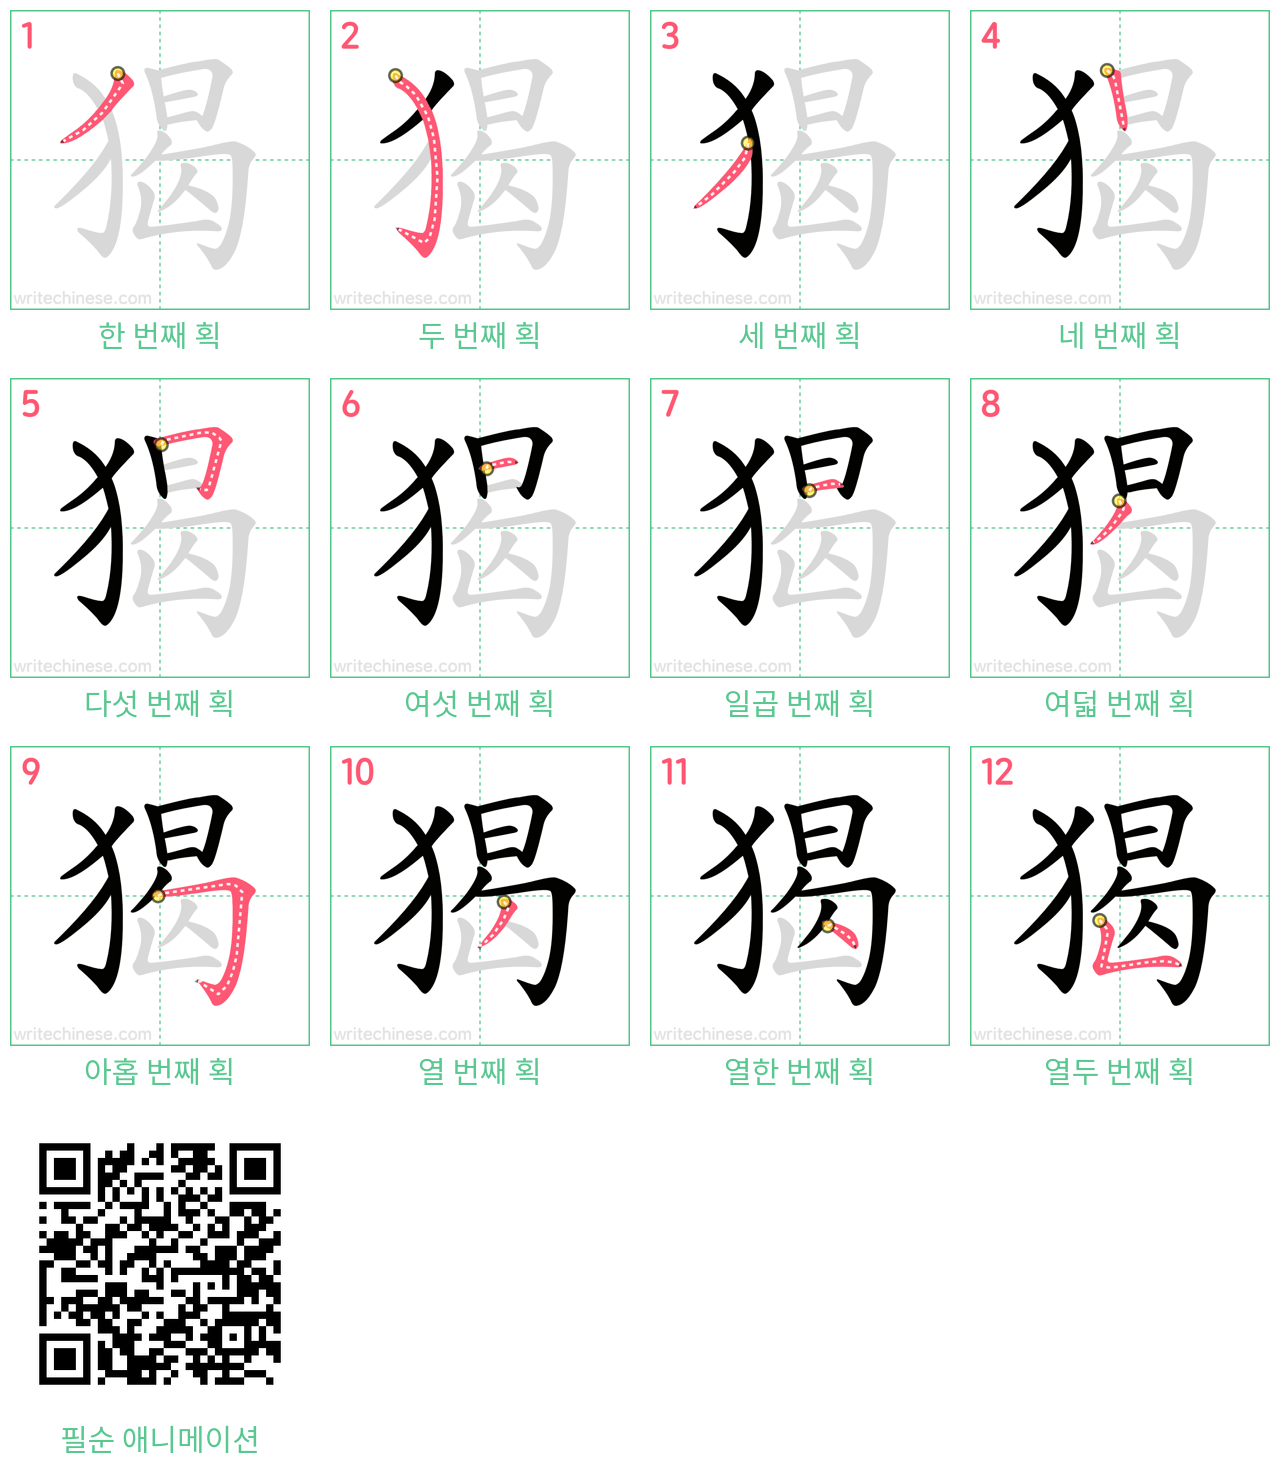 猲 step-by-step stroke order diagrams